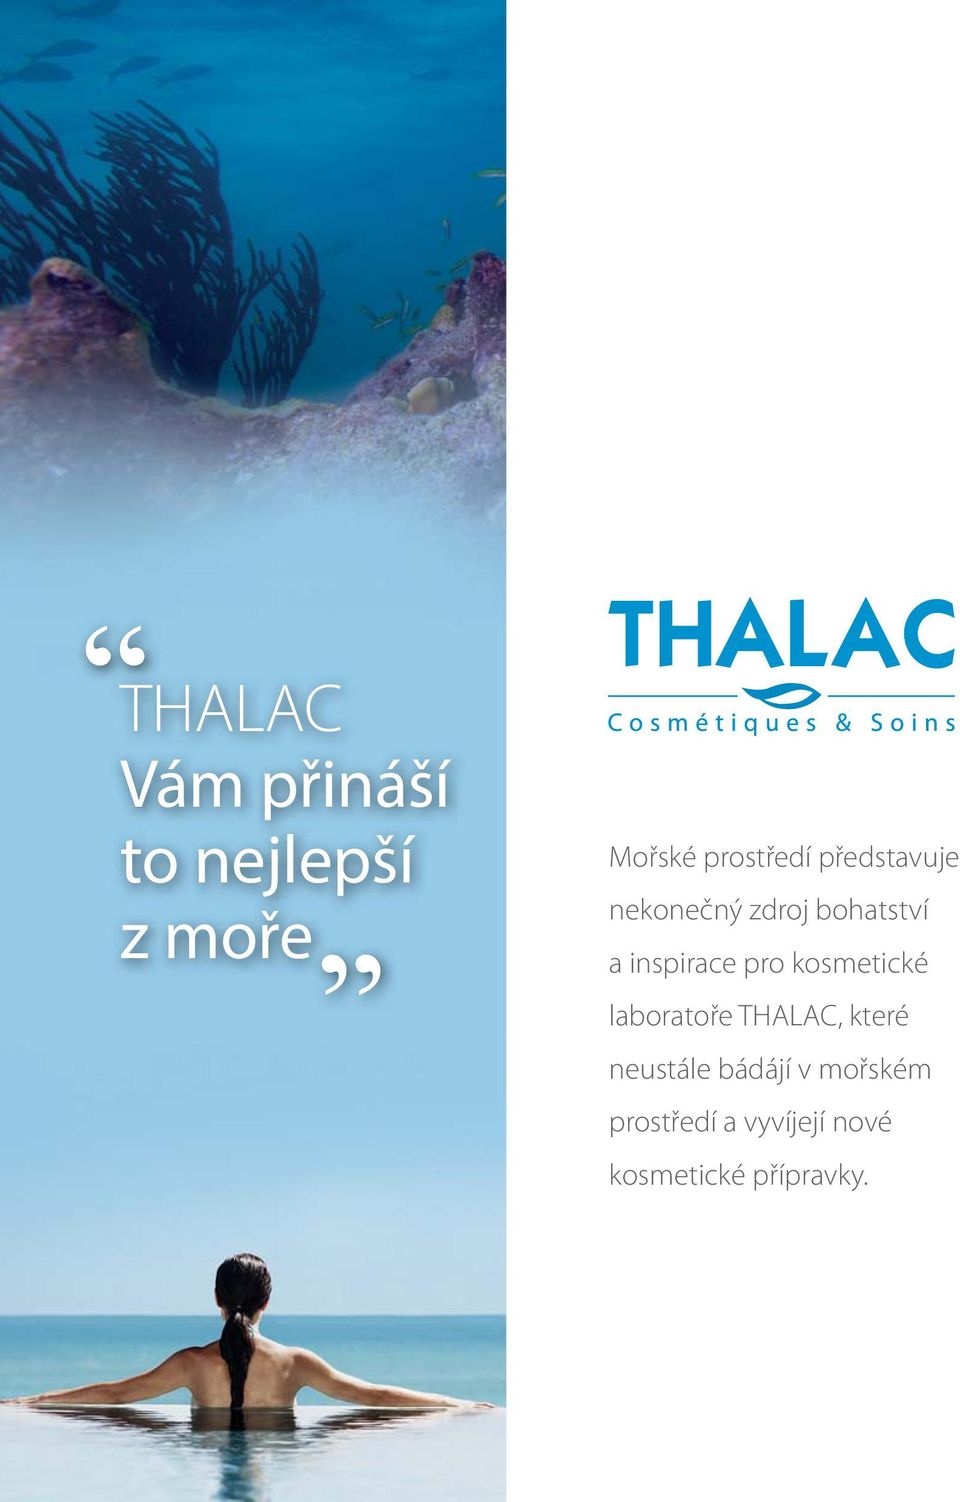 kosmetické laboratoře THALAC, které neustále bádájí v